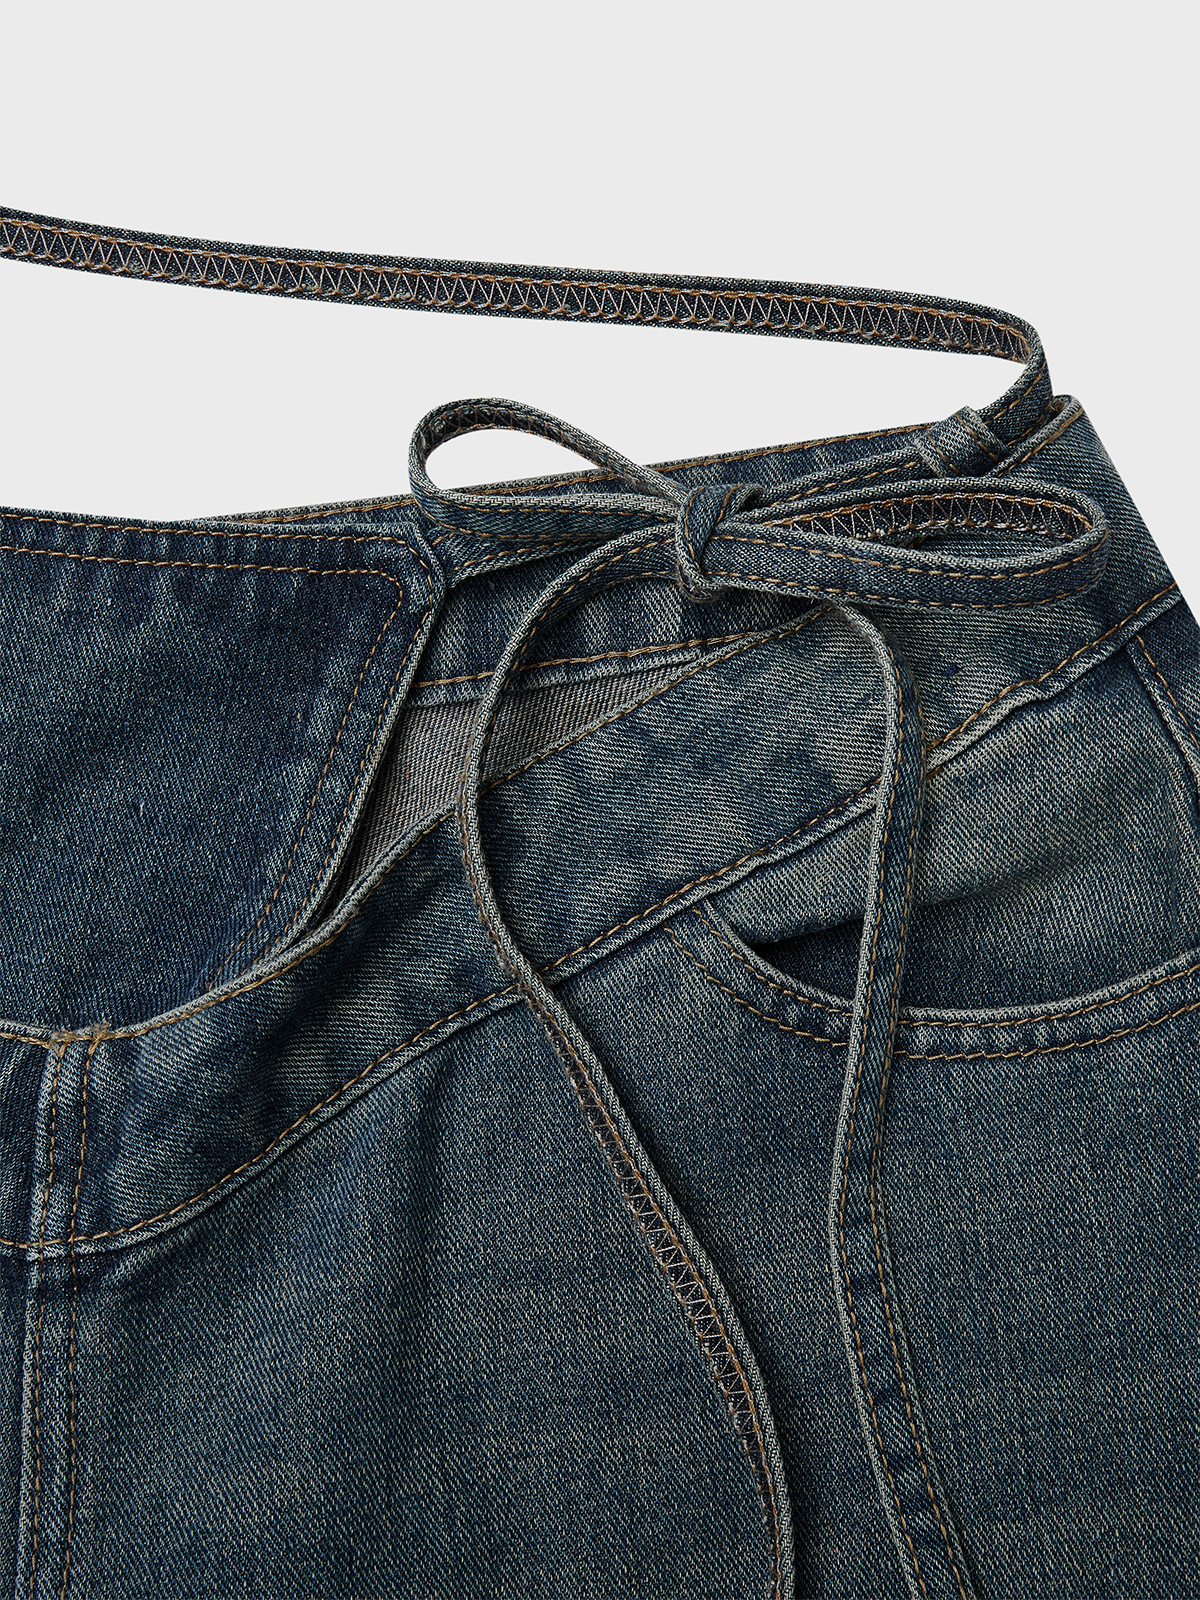 Cut Out Plain Straight Pants Jeans